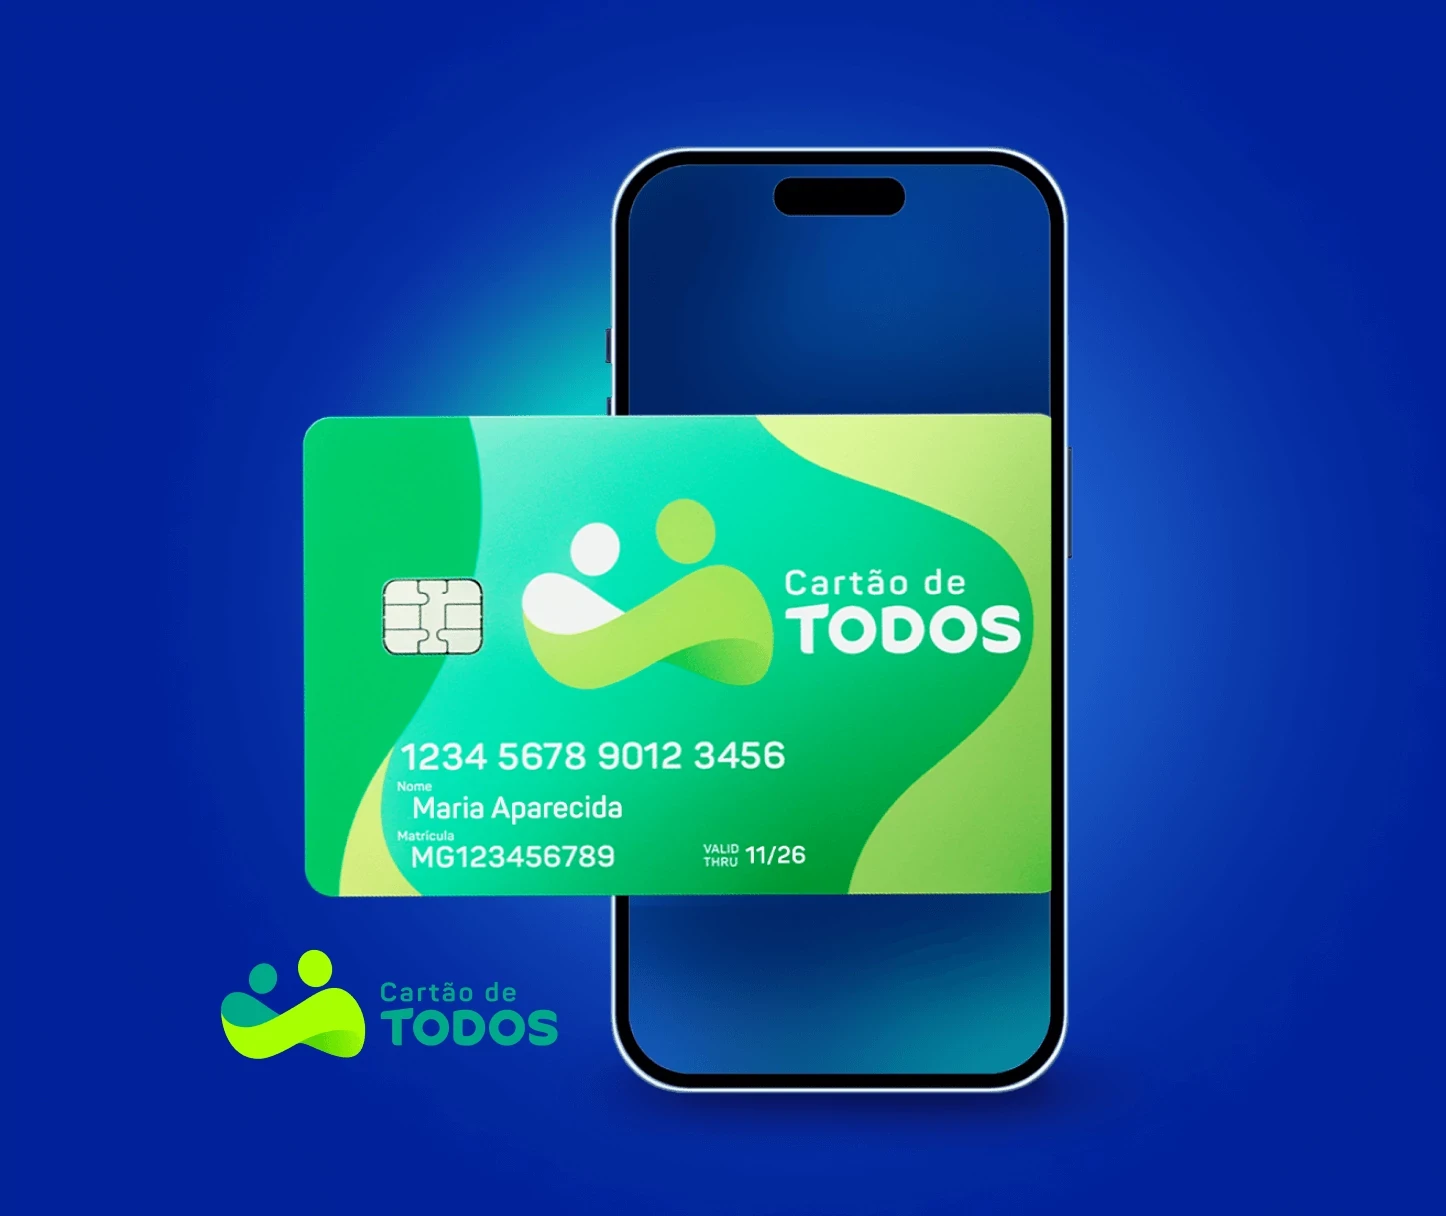 Cartão do Cartão de TODOS acima de celular e logotipo do serviço ao lado